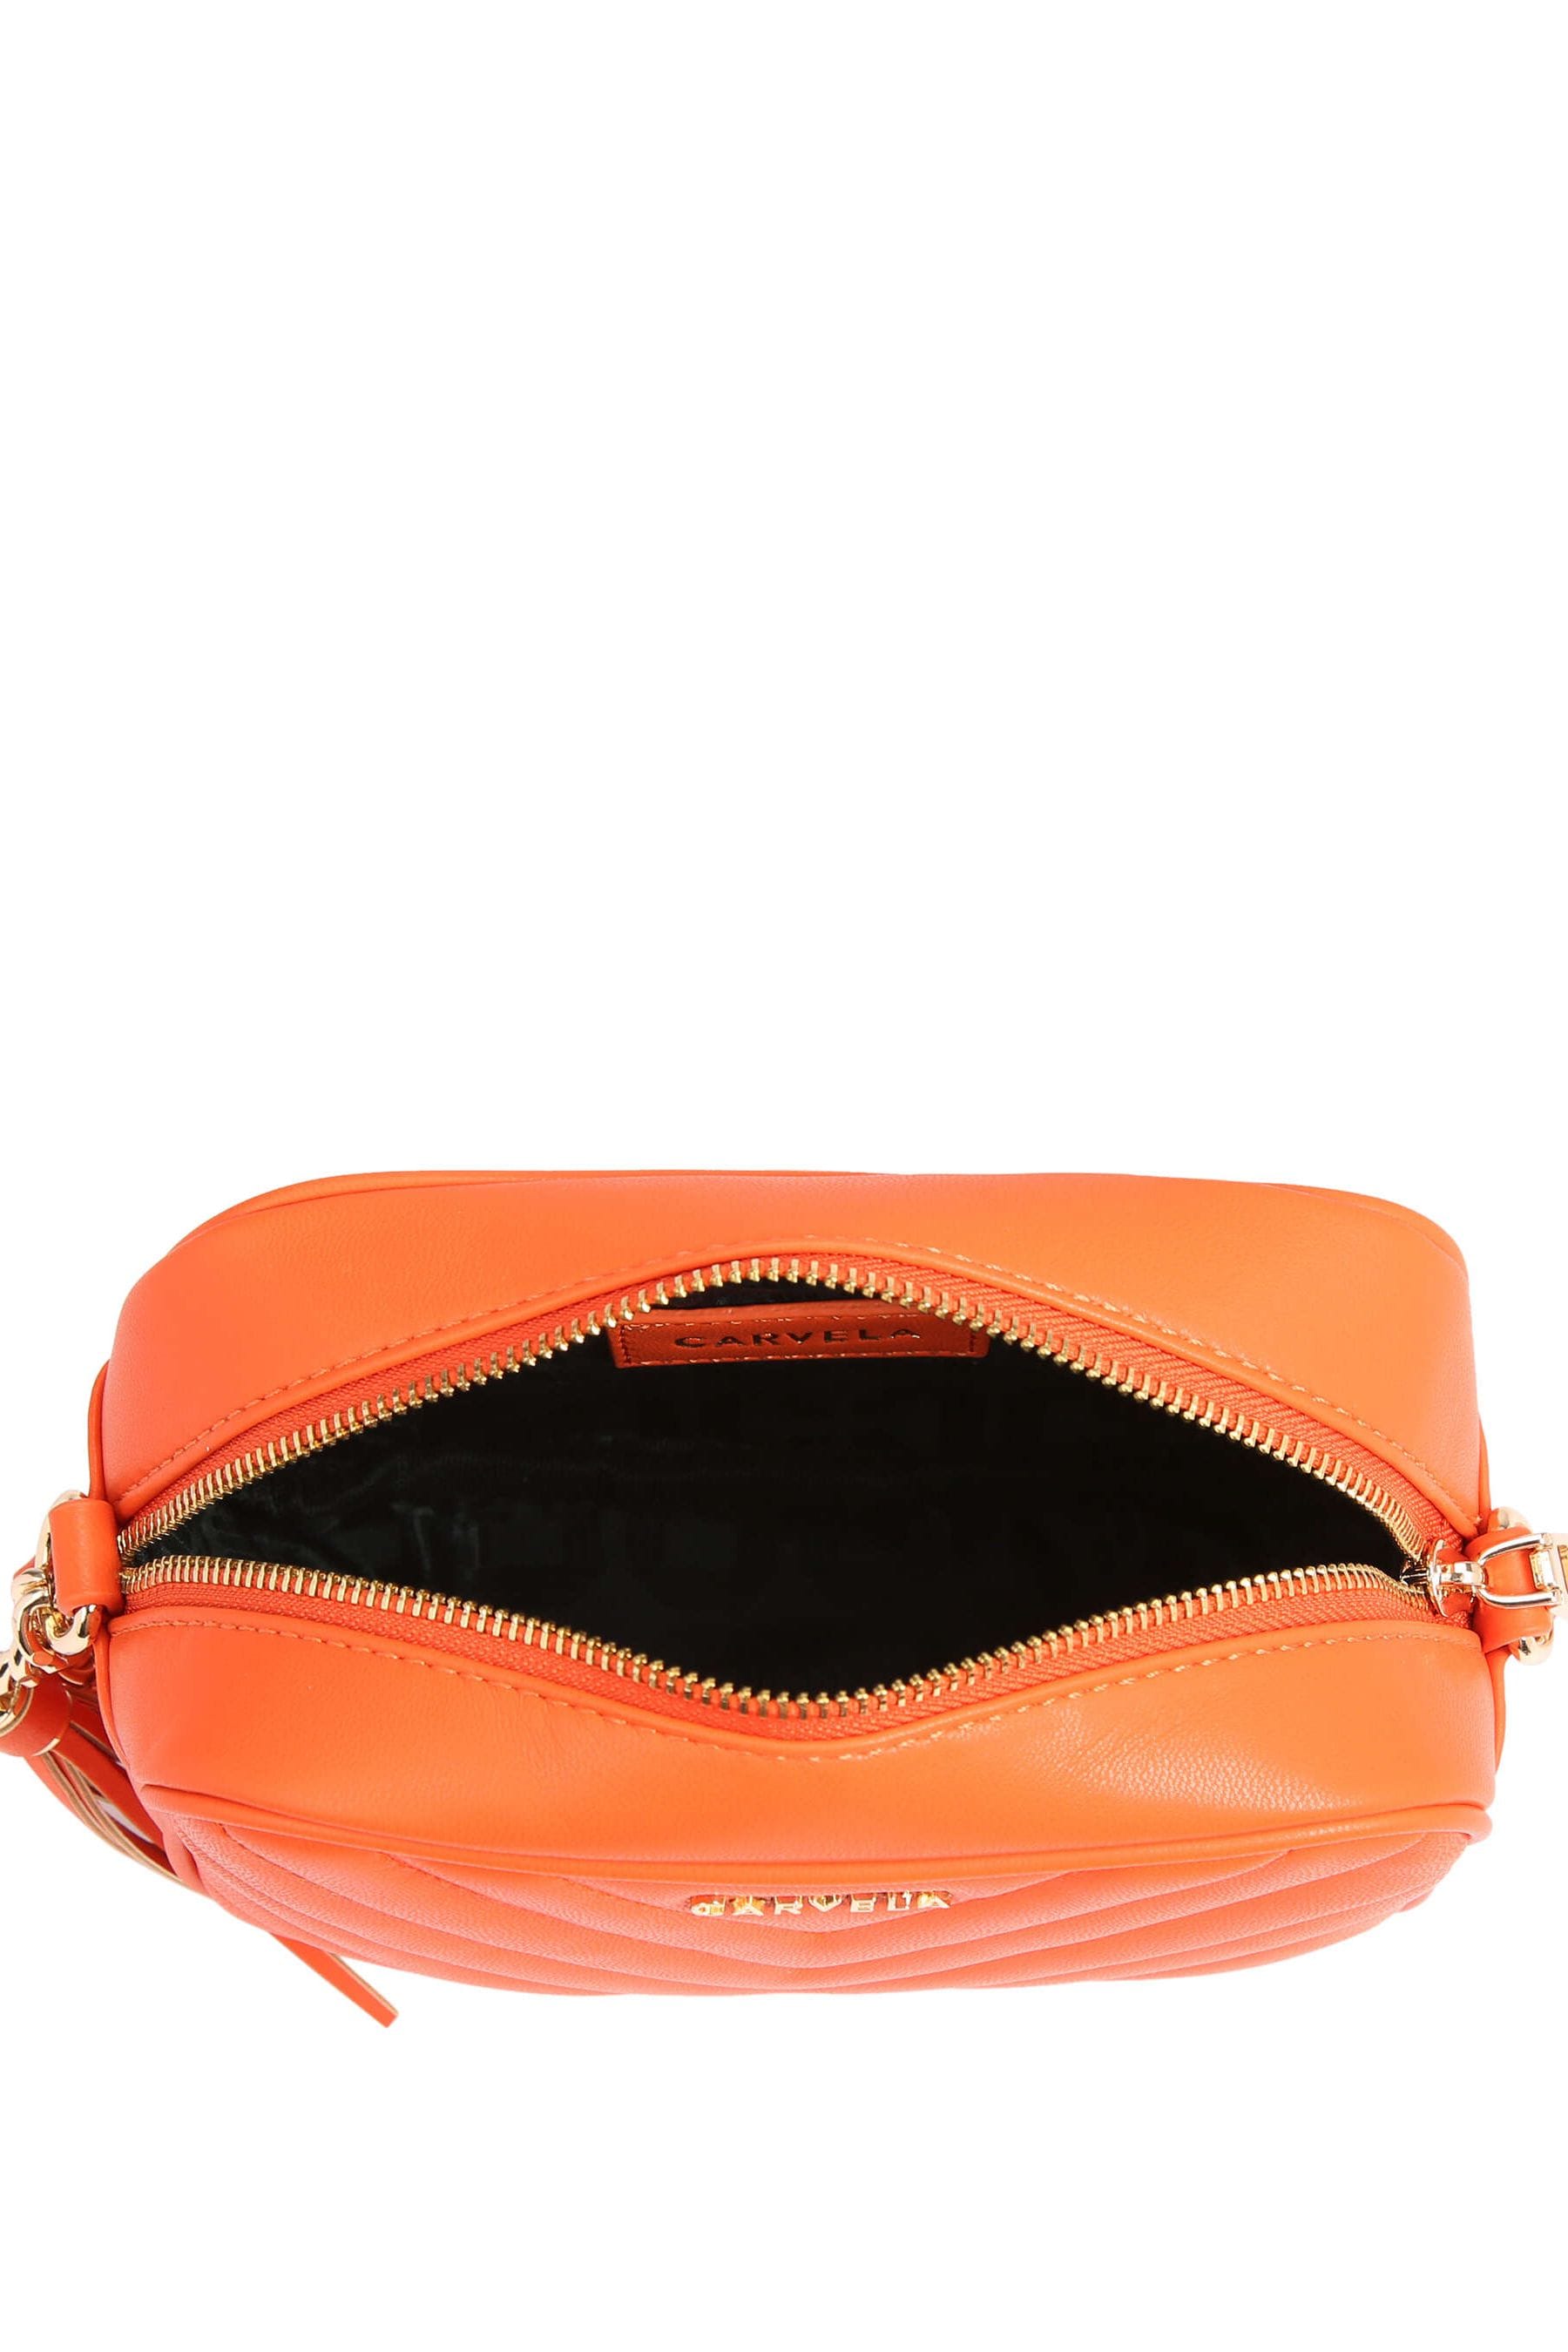 Buy Carvela Lara Tassel Cross-Body Bag from the Next UK online shop